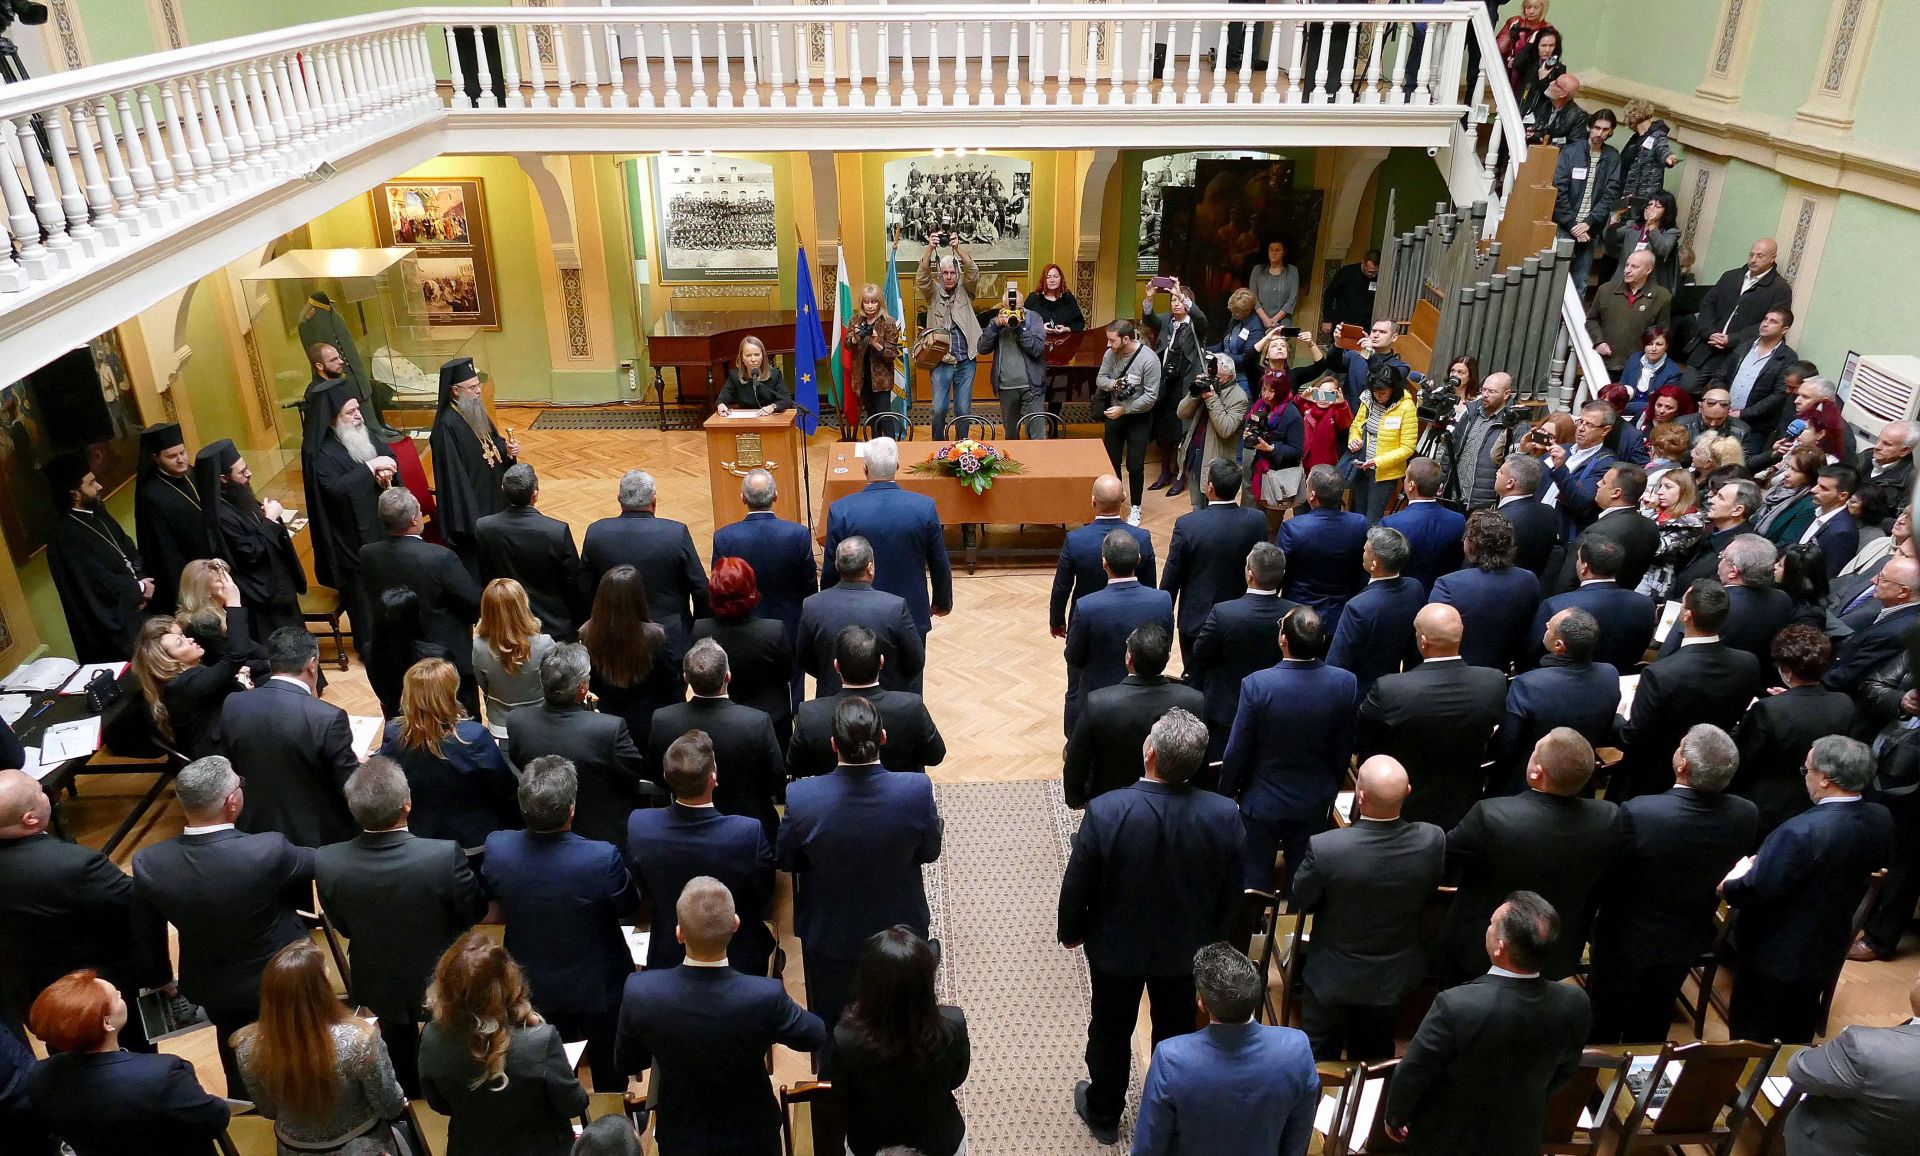 Първата учредителна сесия на новия Общински съвет на Пловдив се проведе в Музея на Съединението в града